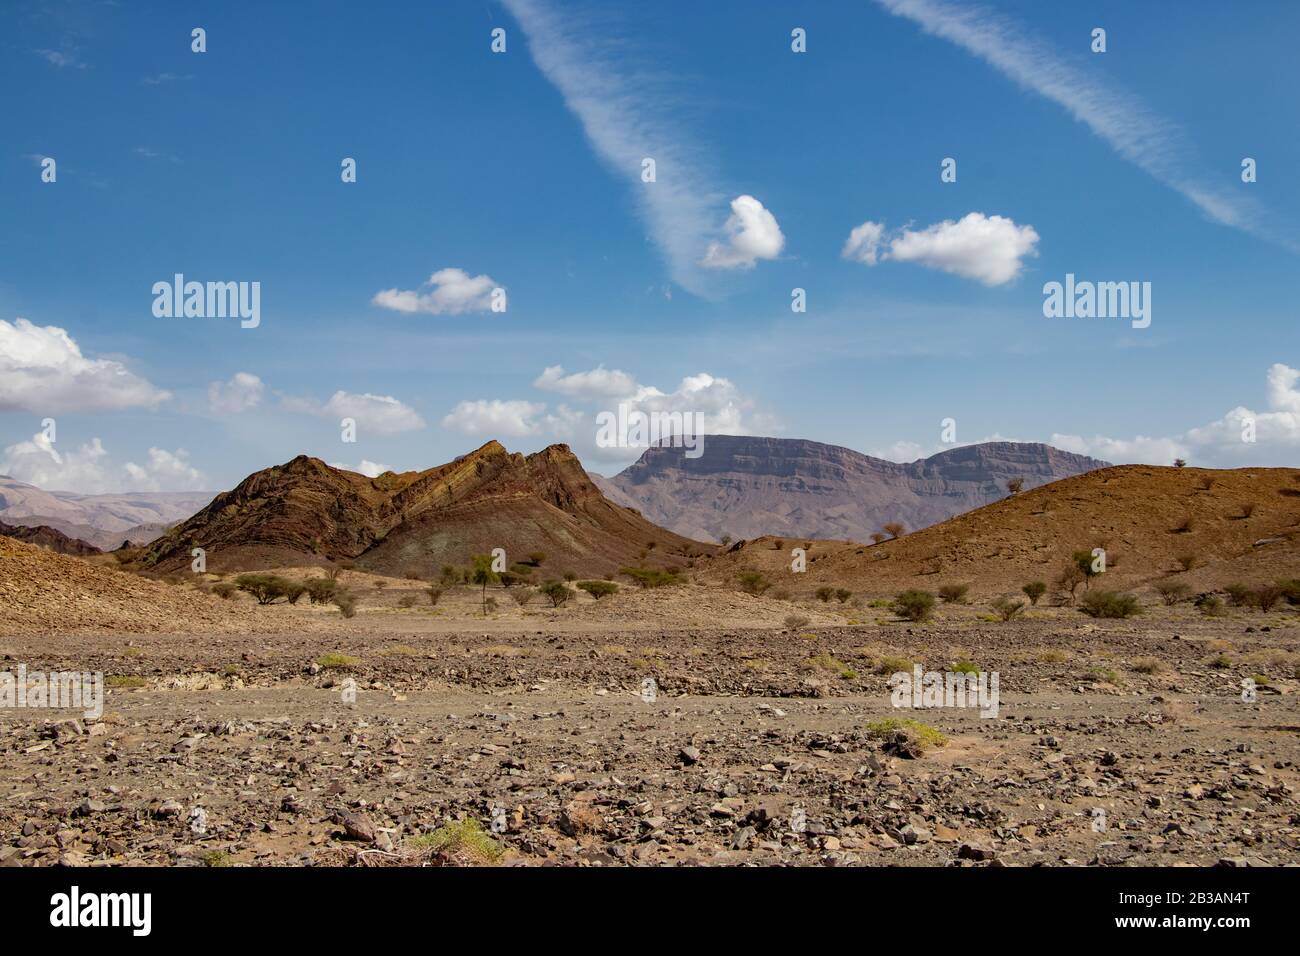 Al khalid fotografías e imágenes de alta resolución - Alamy